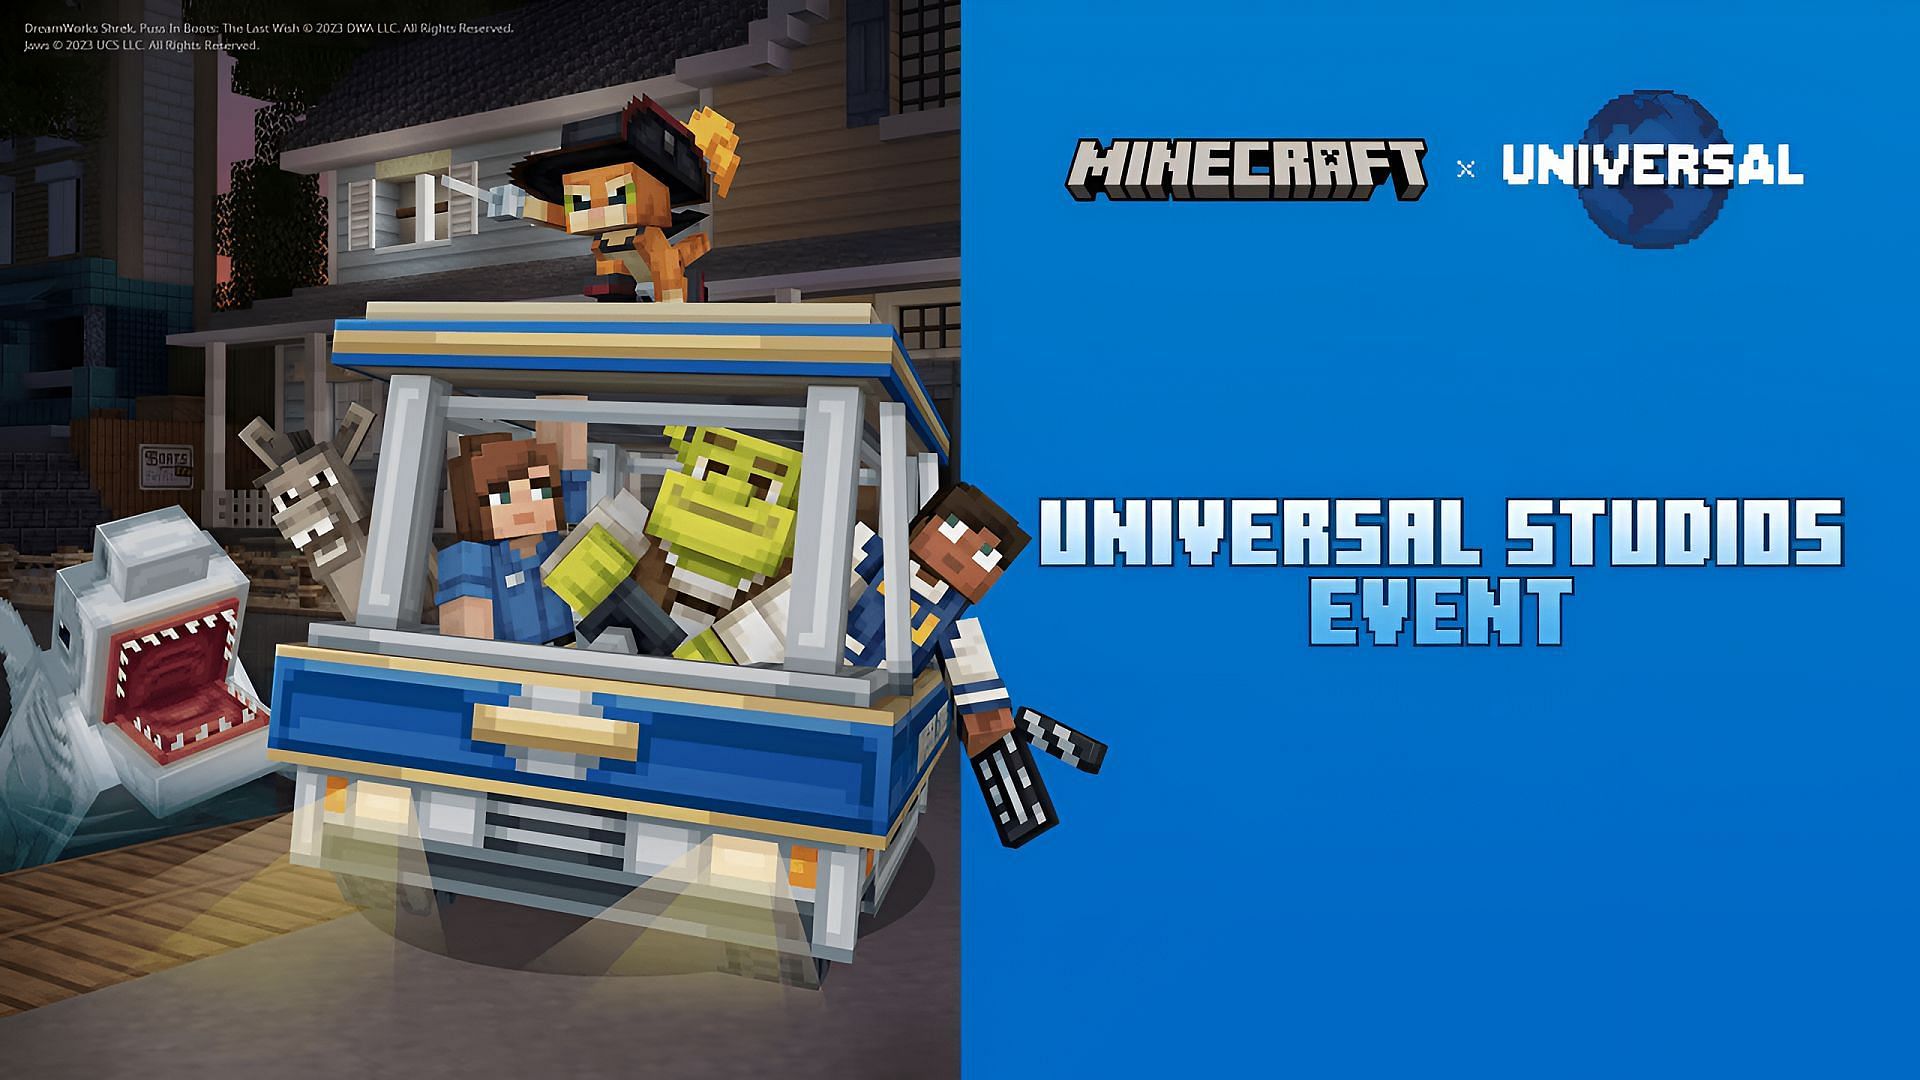 Art clé officiel pour la promotion de Minecraft avec Universal Studios (Image via Mojang/Universal)